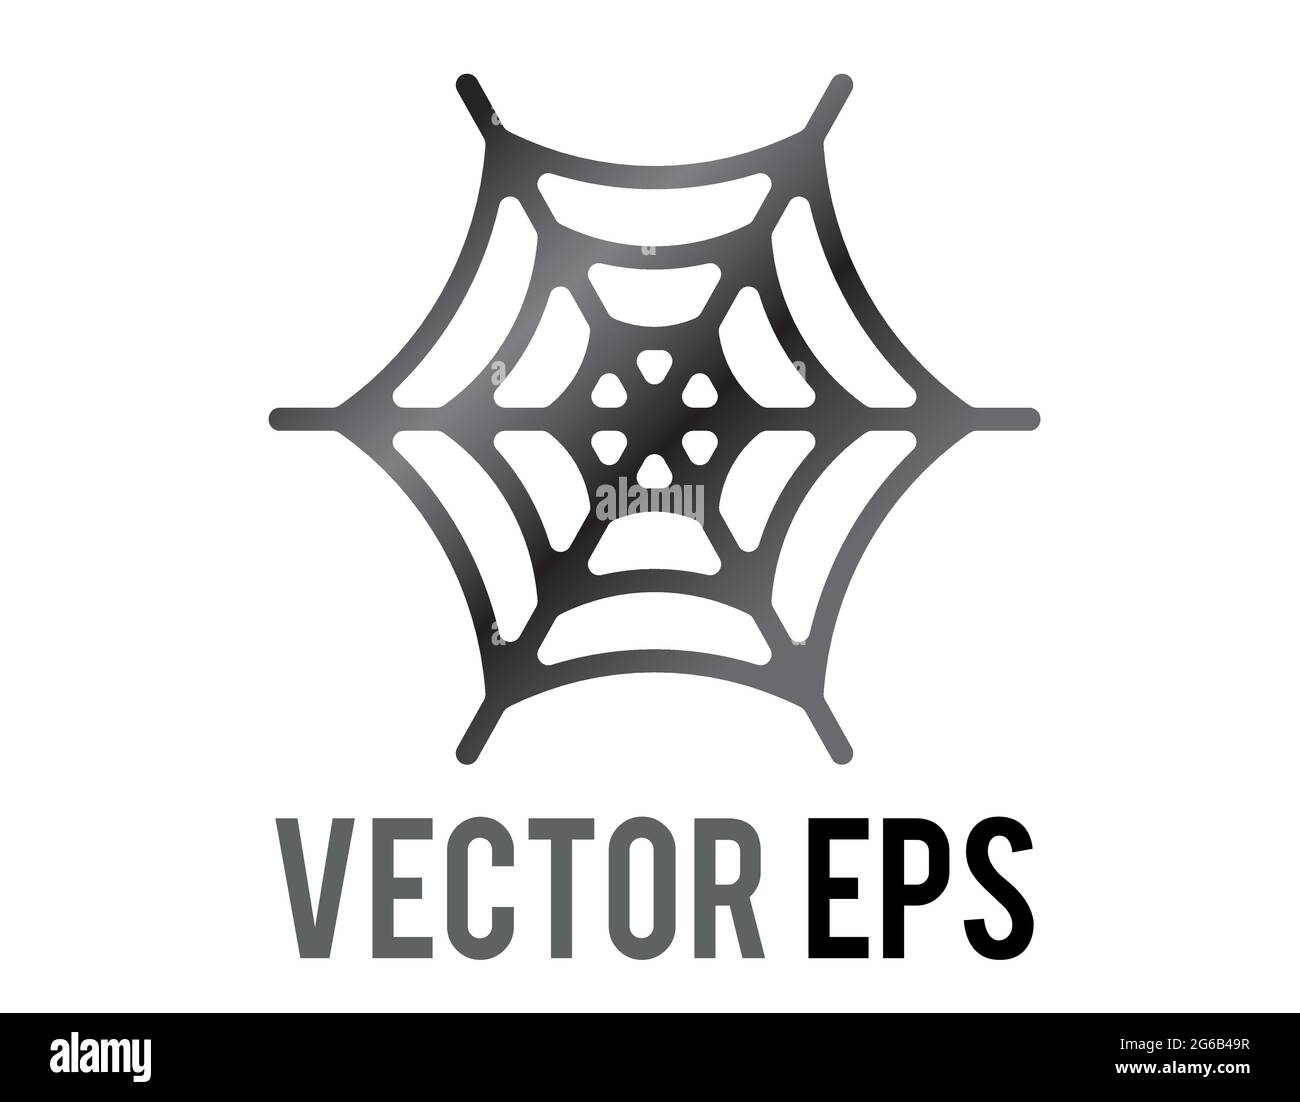 L'icône de décoration d'Halloween de toile d'araignée classique isolée, couramment utilisée pendant Halloween, pour représenter le super-héros Spider-Man Illustration de Vecteur